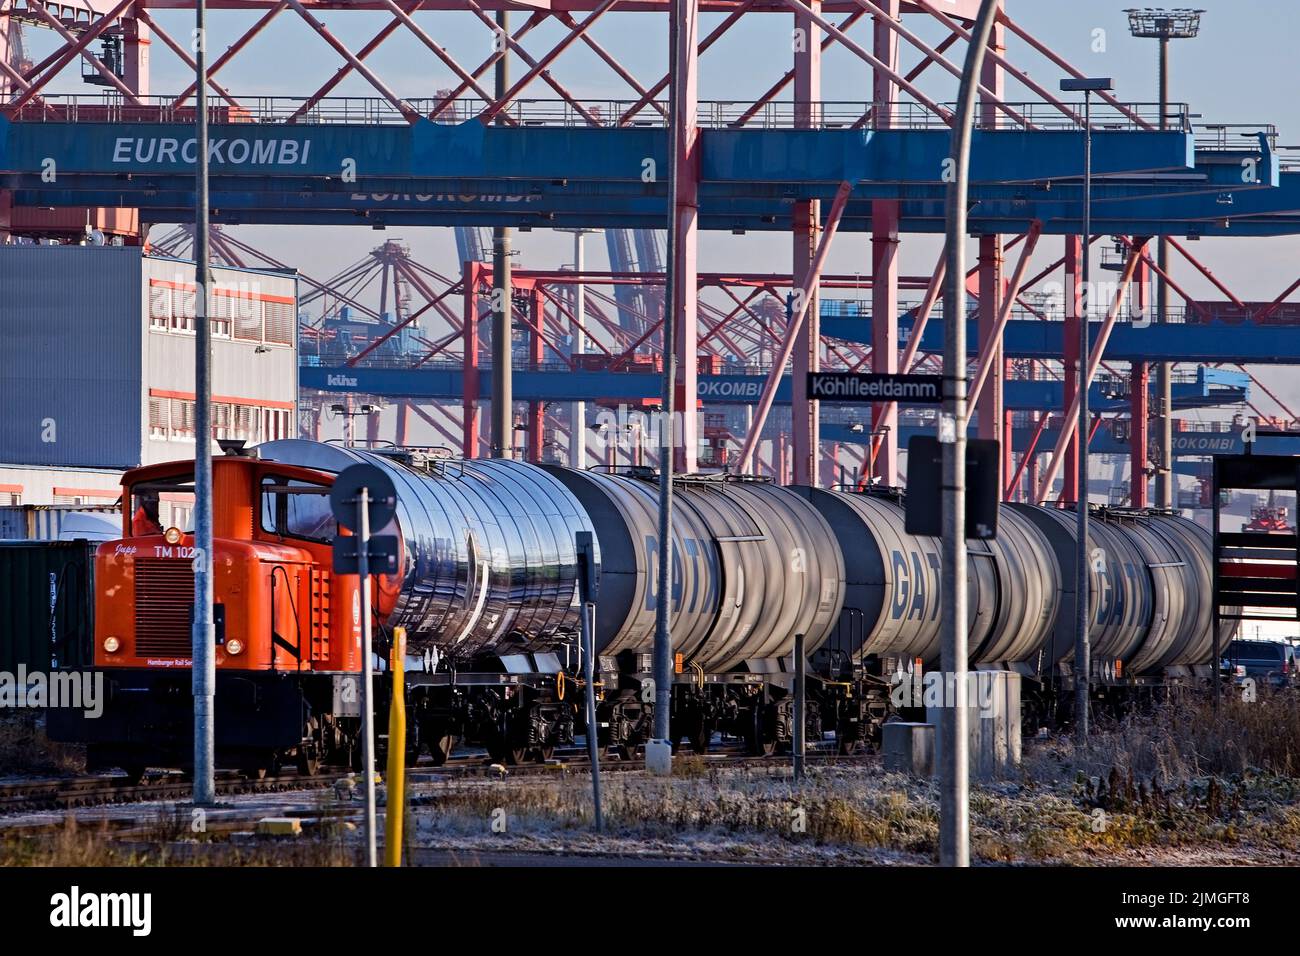 Lok mit Guetertransport auf der Schiene, Eurokombi, Hamburger Hafen, Hamburg, Deutschland, Europa Stock Photo